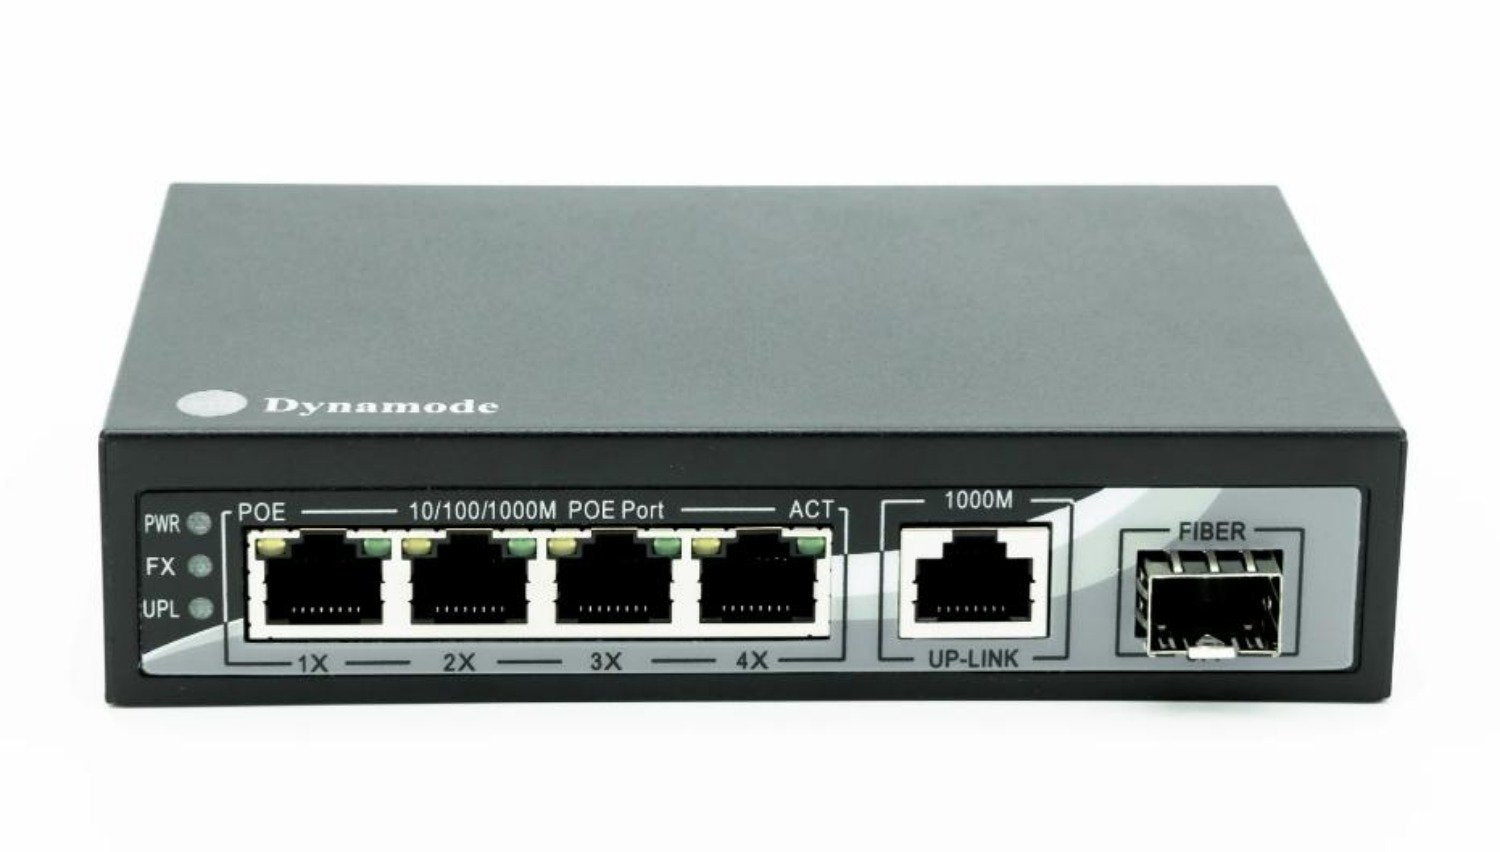 4 Port Gigabit Ethernet 10/100/1000 Desktop PoE Switch + 1 Uplink + SFP Port (SW40010-G-POE)